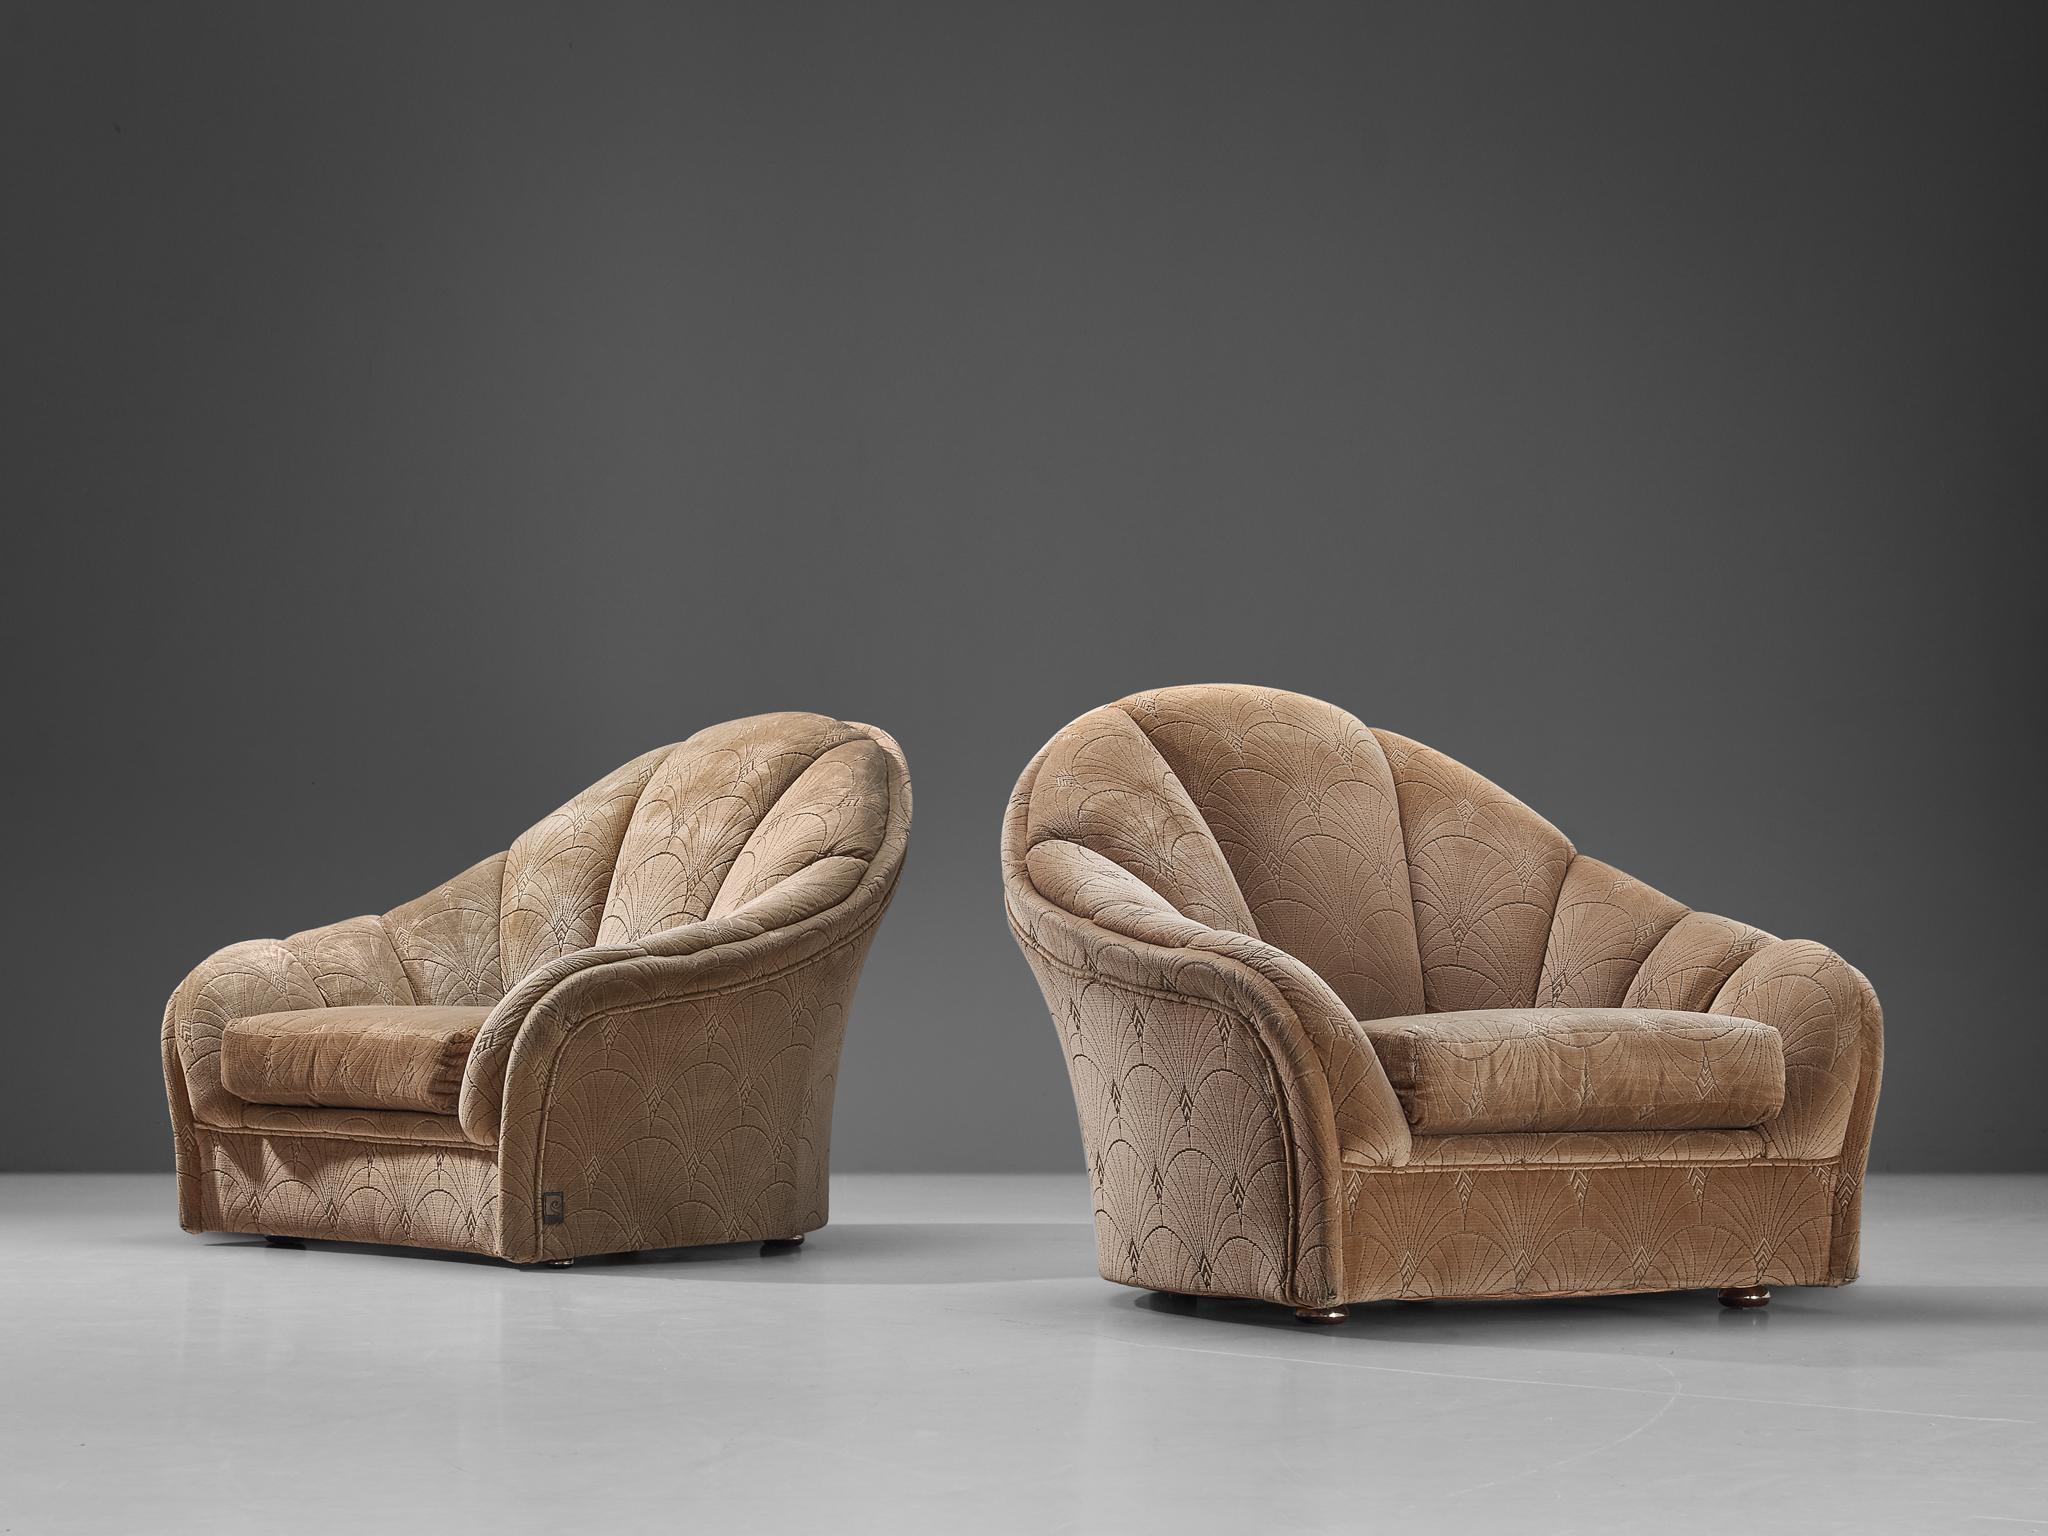 Pierre Cardin, paire de fauteuils, velours beige, plastique, chrome, France, années 1970 

Cette paire de chaises longues a été conçue par le créateur de mode révolutionnaire Pierre Cardin (1922 - 2020). Pierre Cardin était un créateur de mode